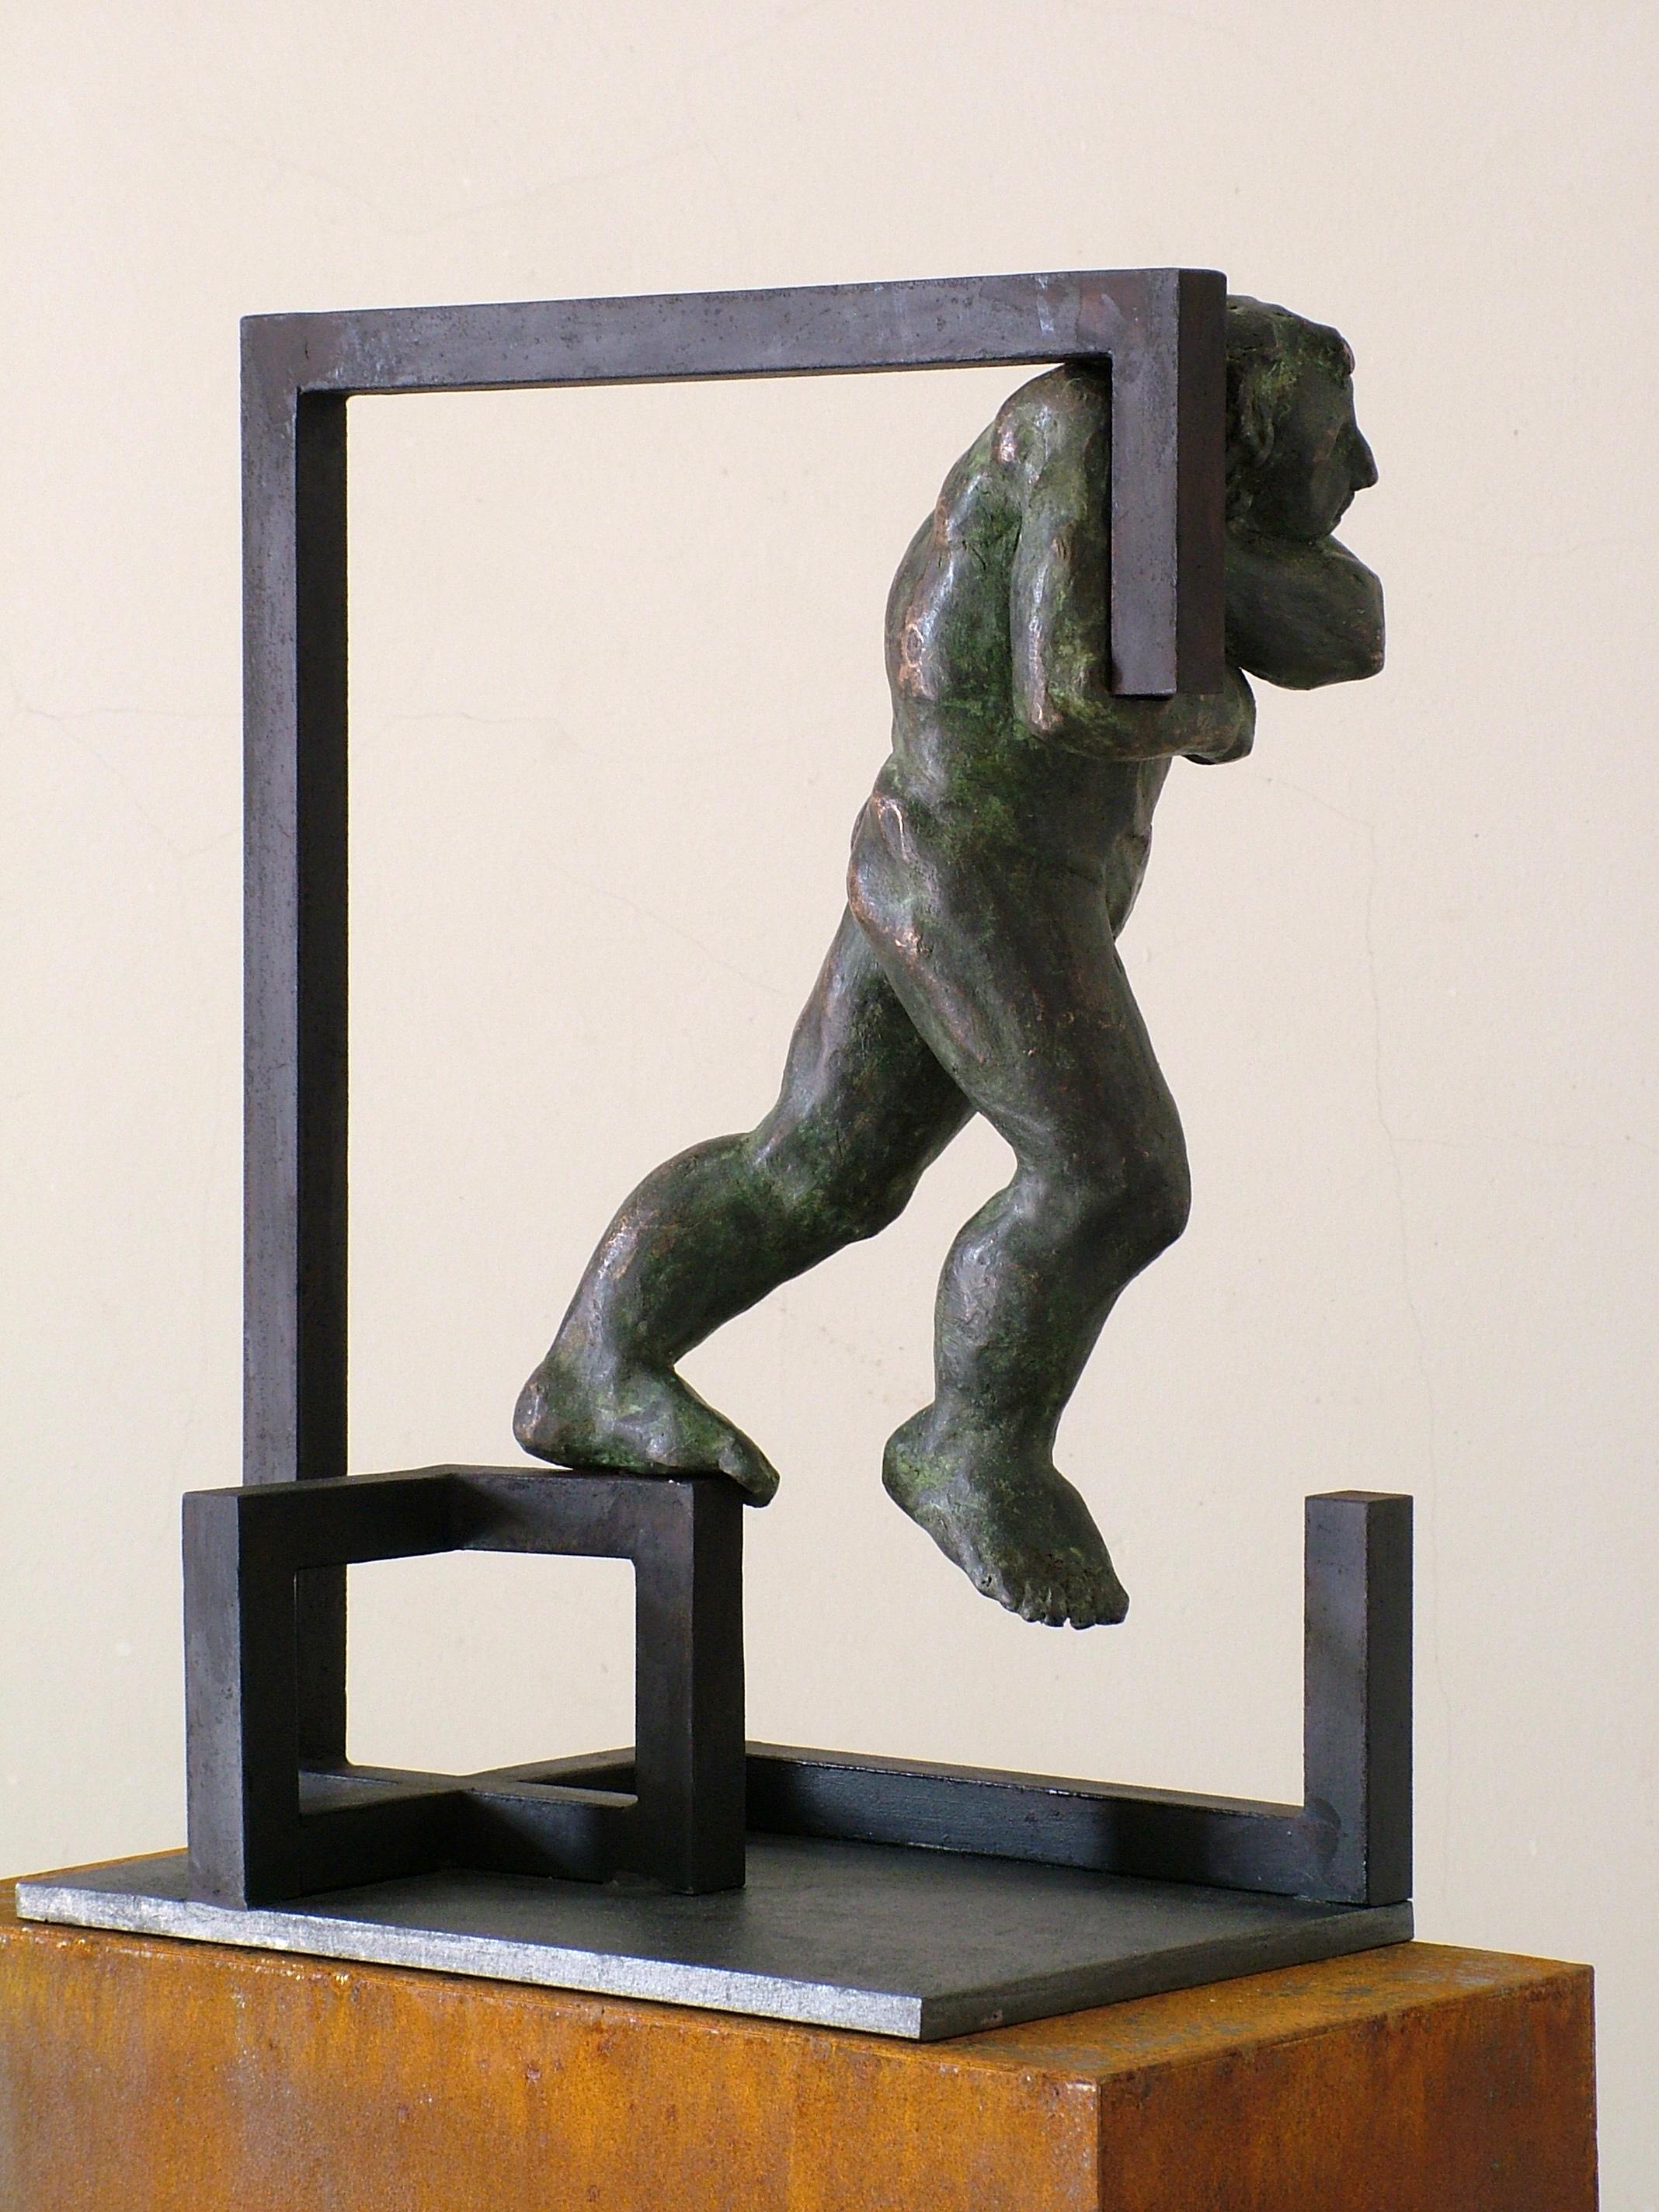 Amancio.  carácter rudo. escultura original hierro bronce - Sculpture de Amancio Gonzalez Morera